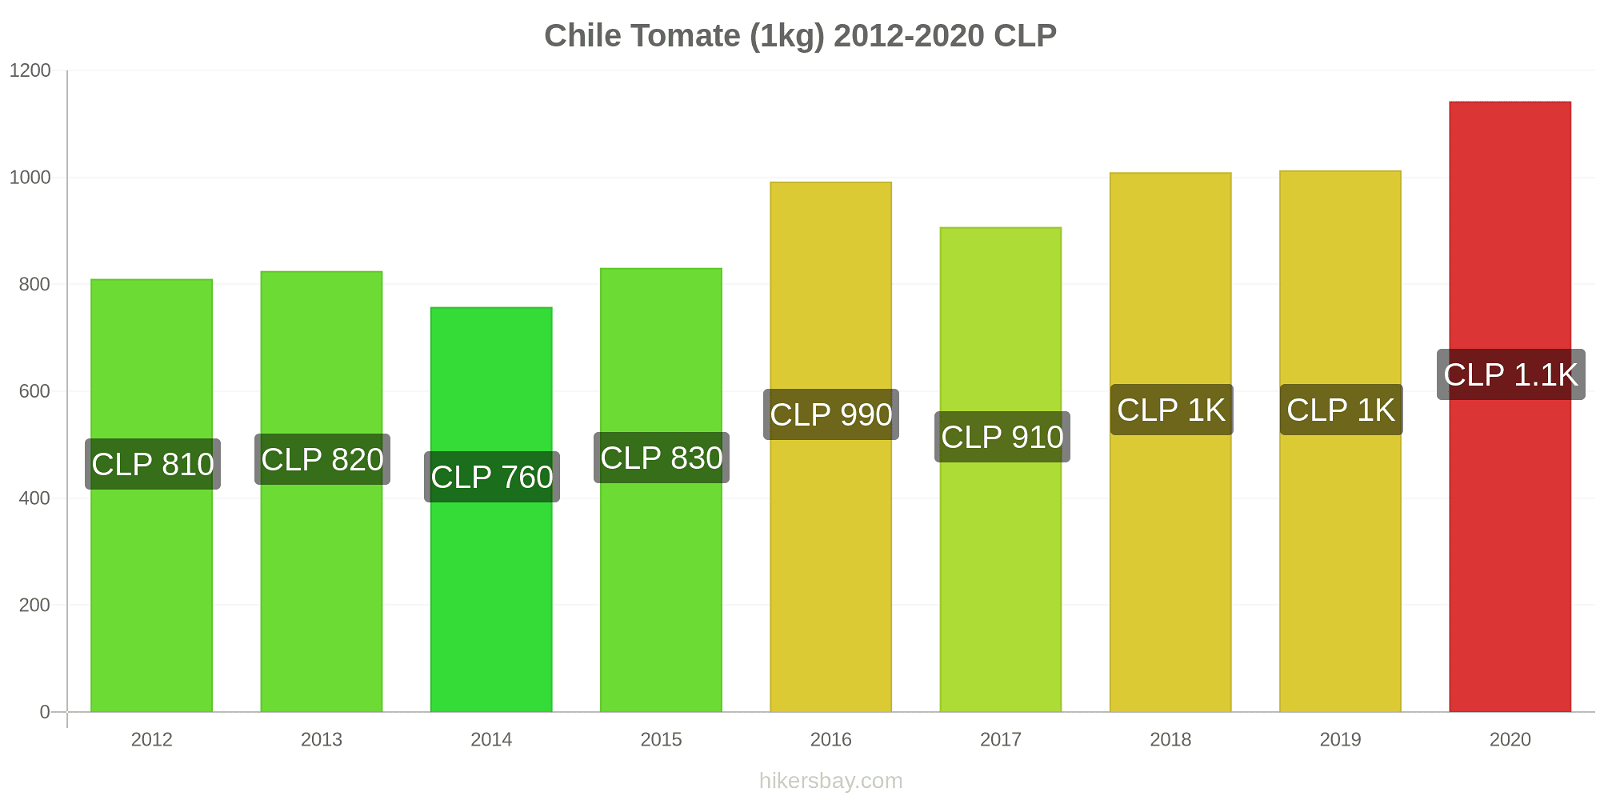 Chile cambios de precios Tomate (1kg) hikersbay.com